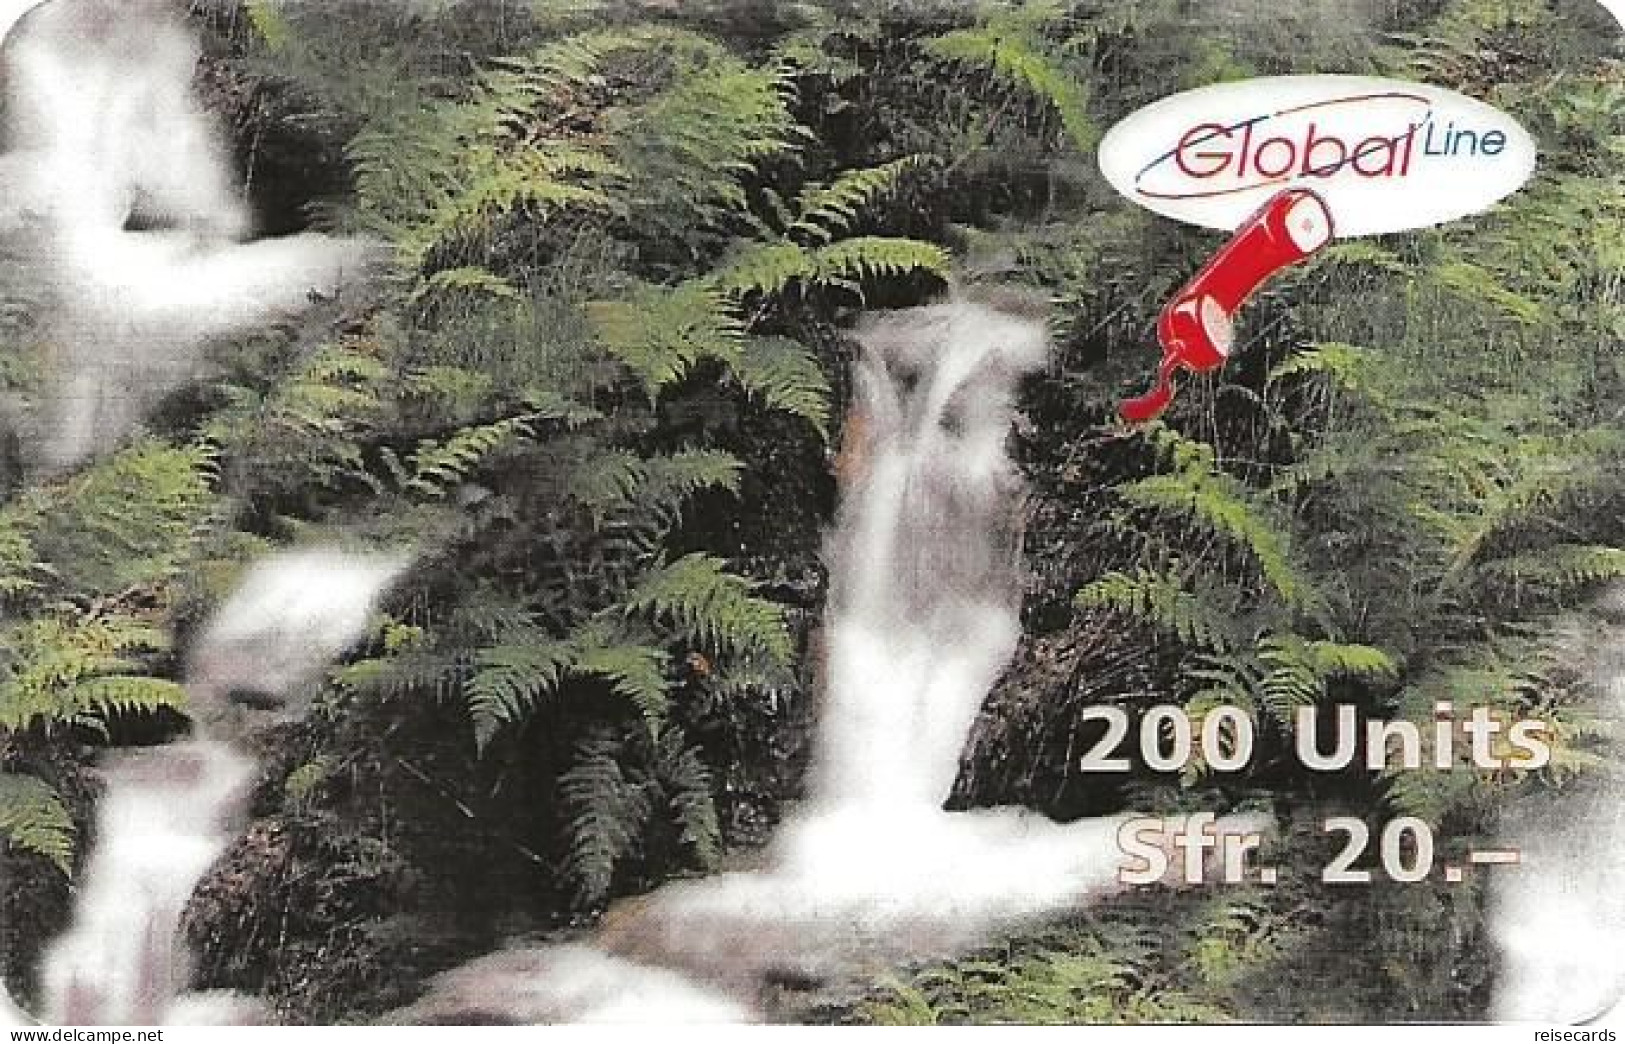 Switzerland Prepaid: Global Line - Wasserfall 12.99 124 - Switzerland